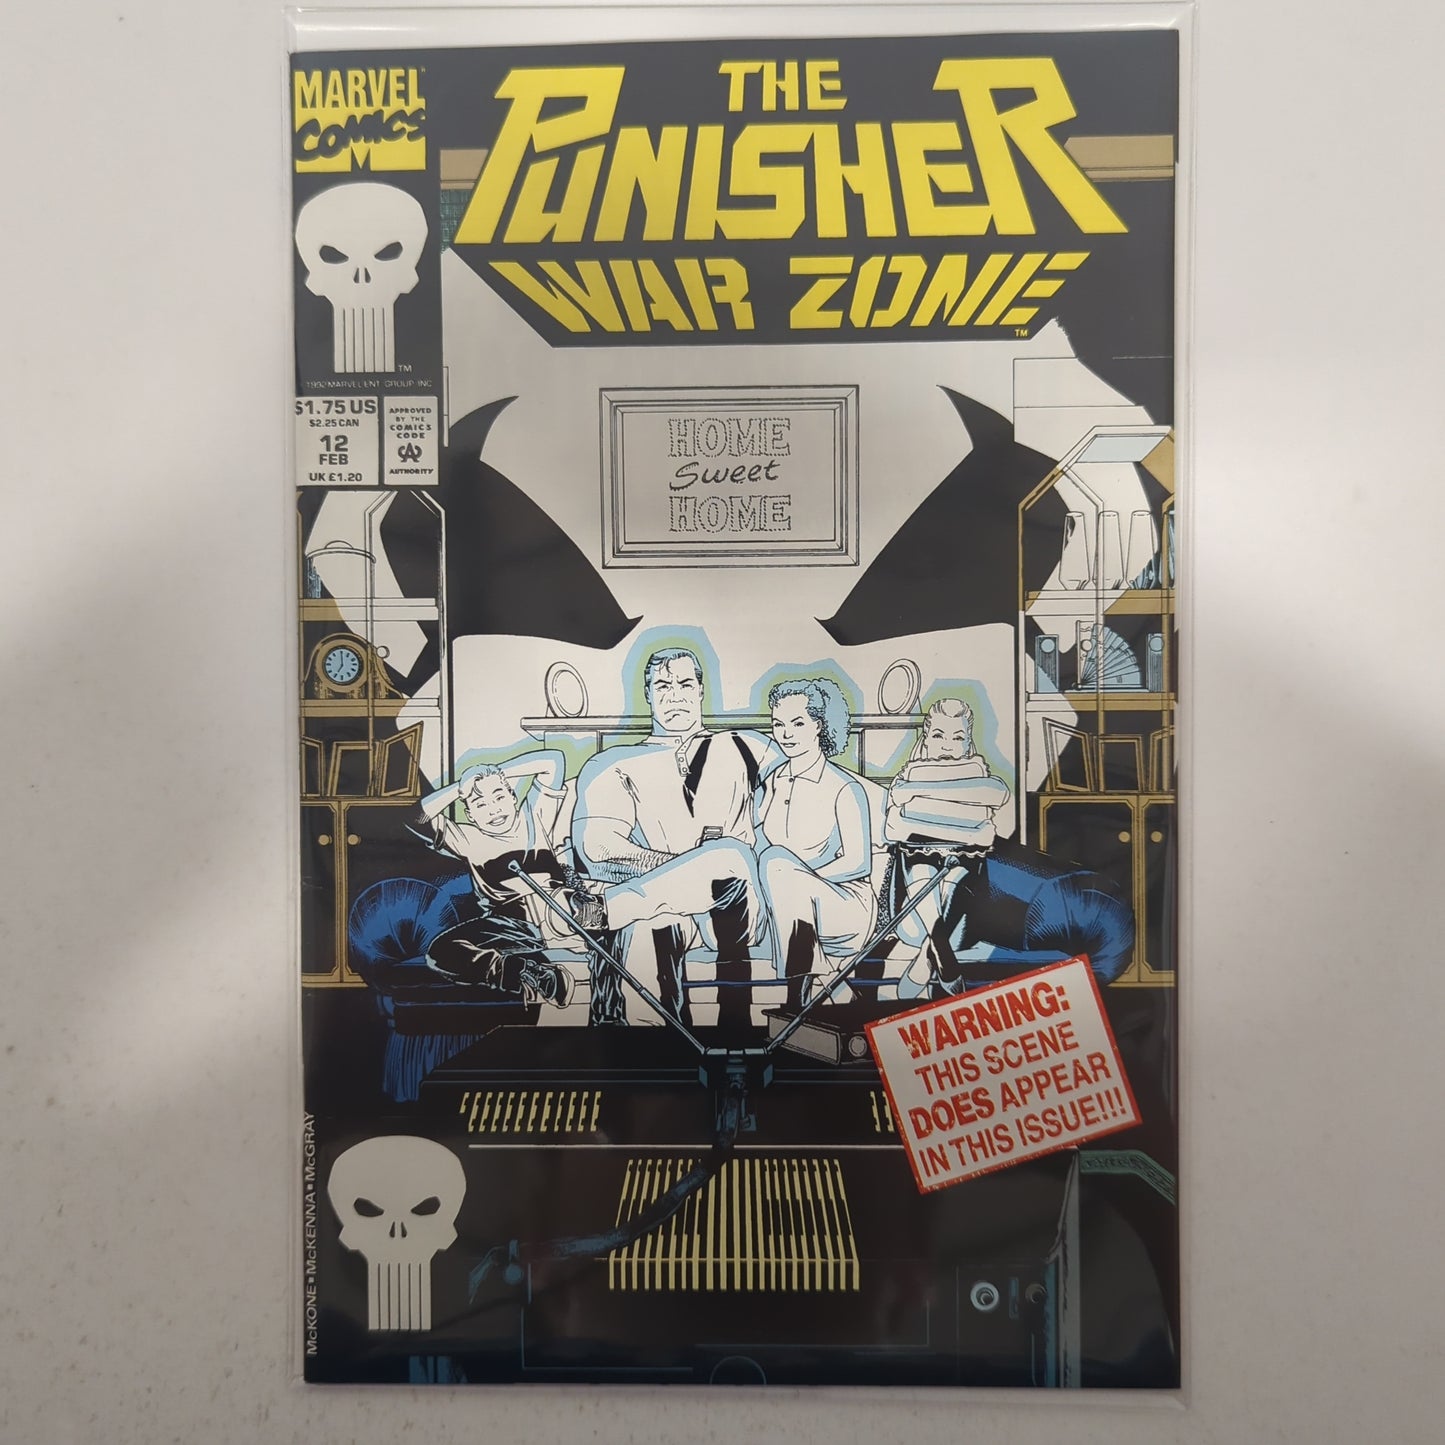 The Punisher War Zone #12